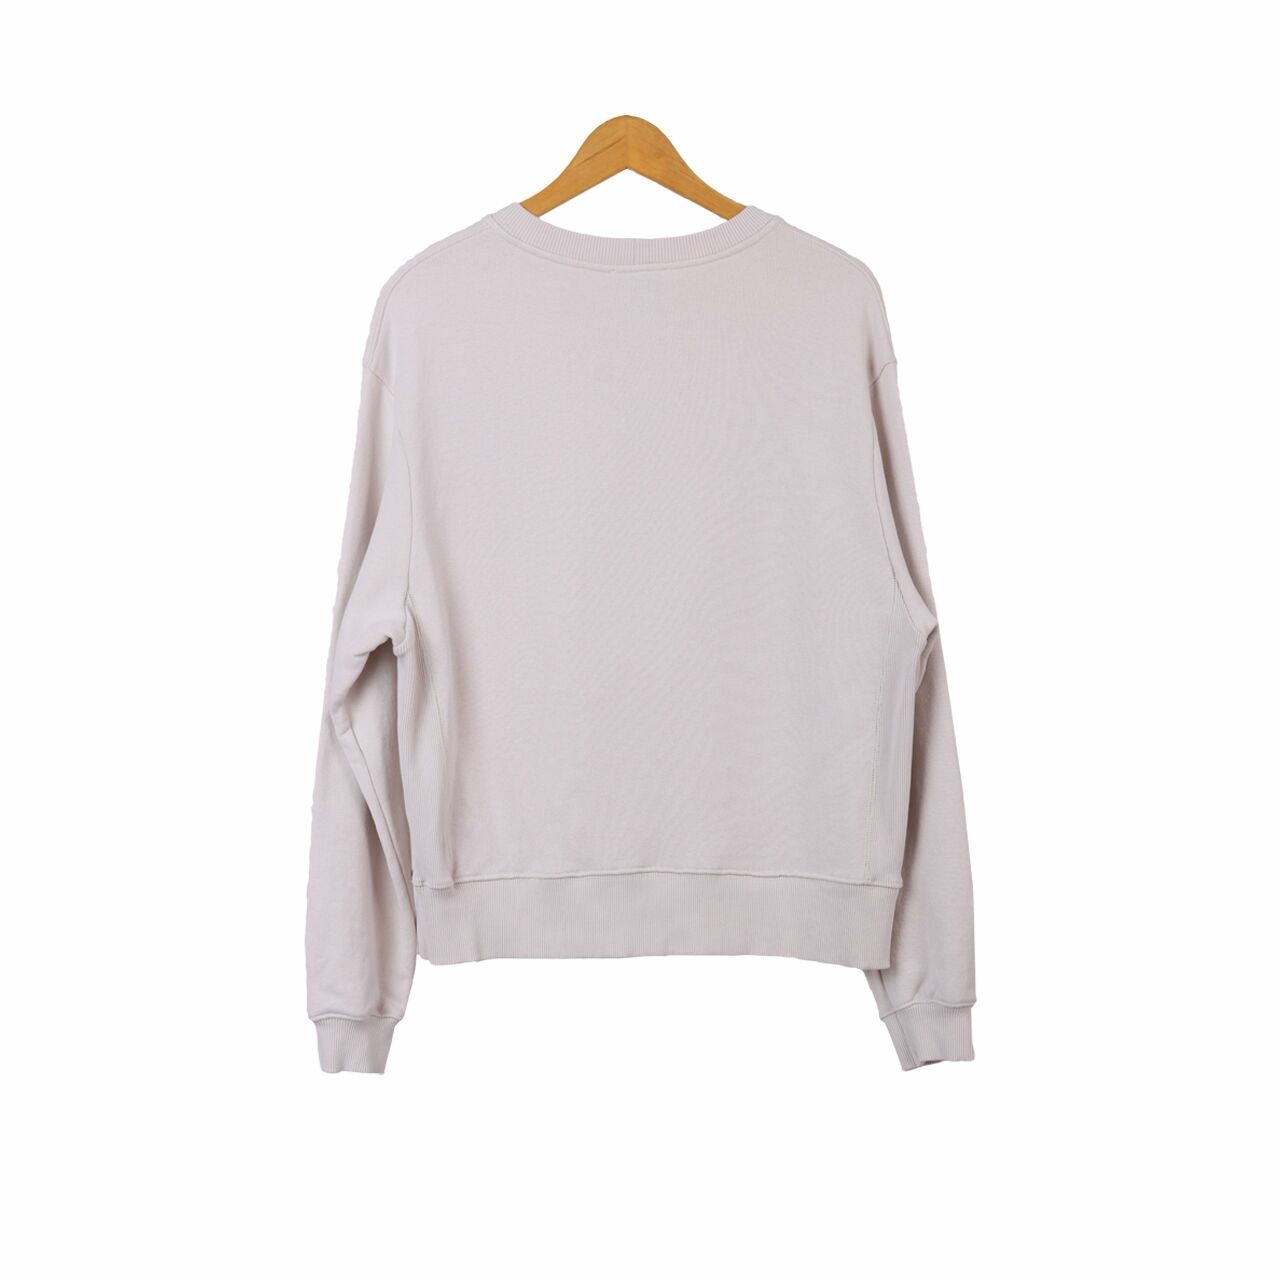 Zara Beige Graphic Sweater